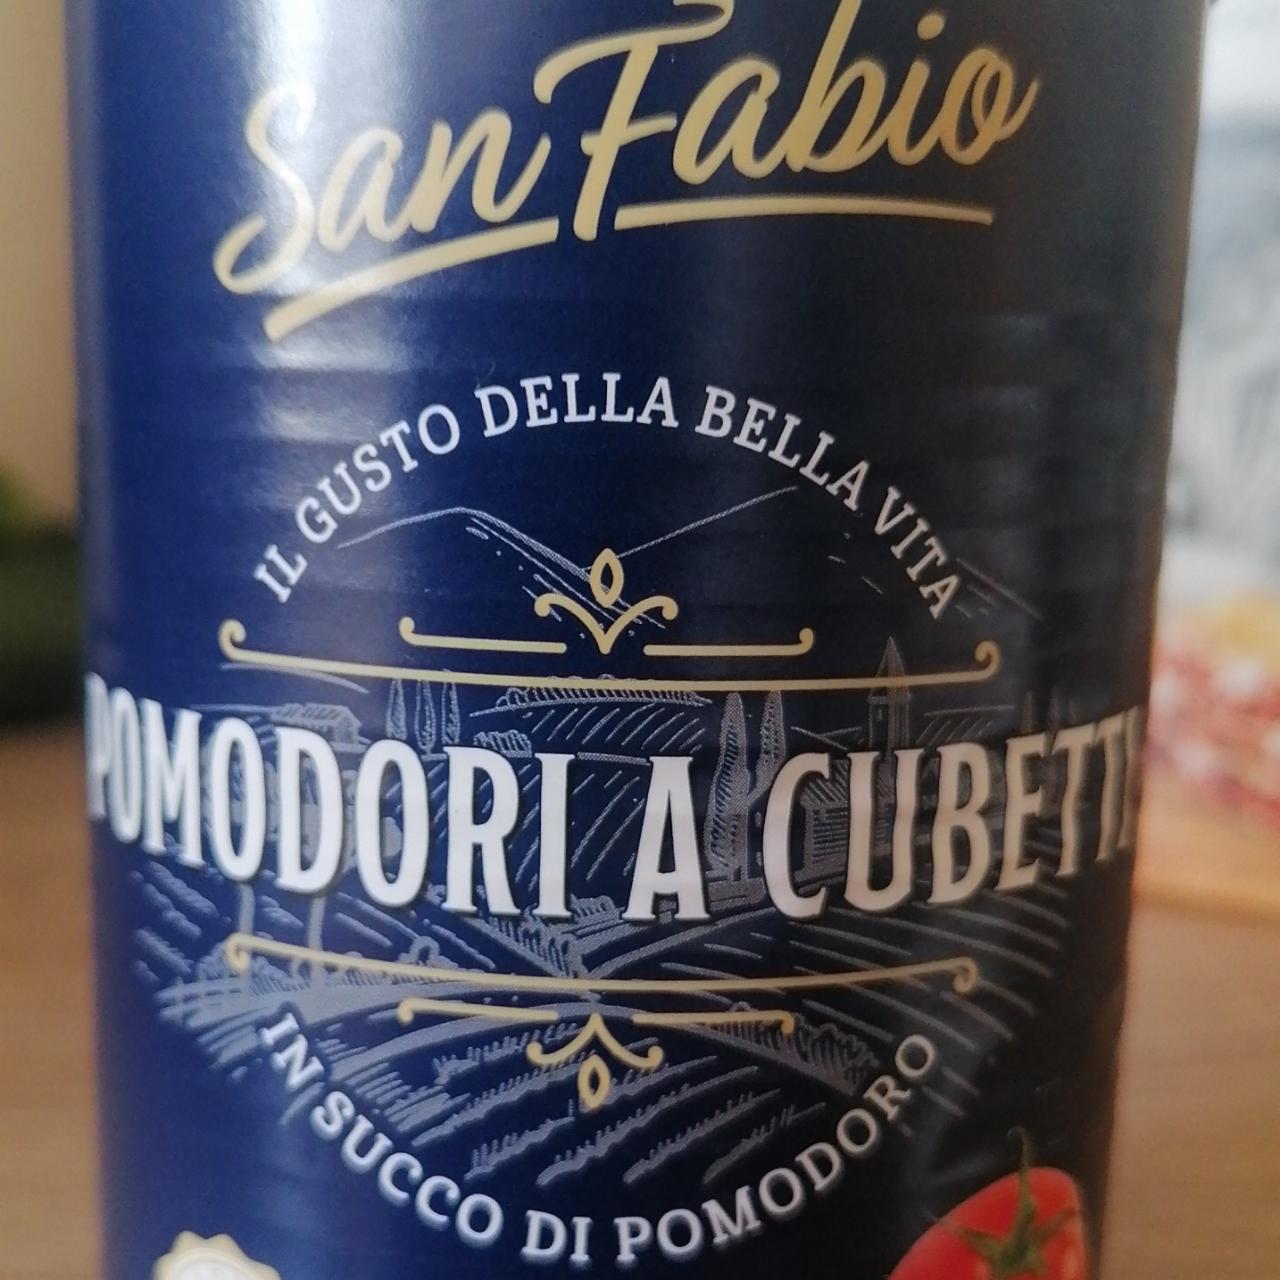 Képek - Pomodori a cubetti in succo di pomodoro San Fabio